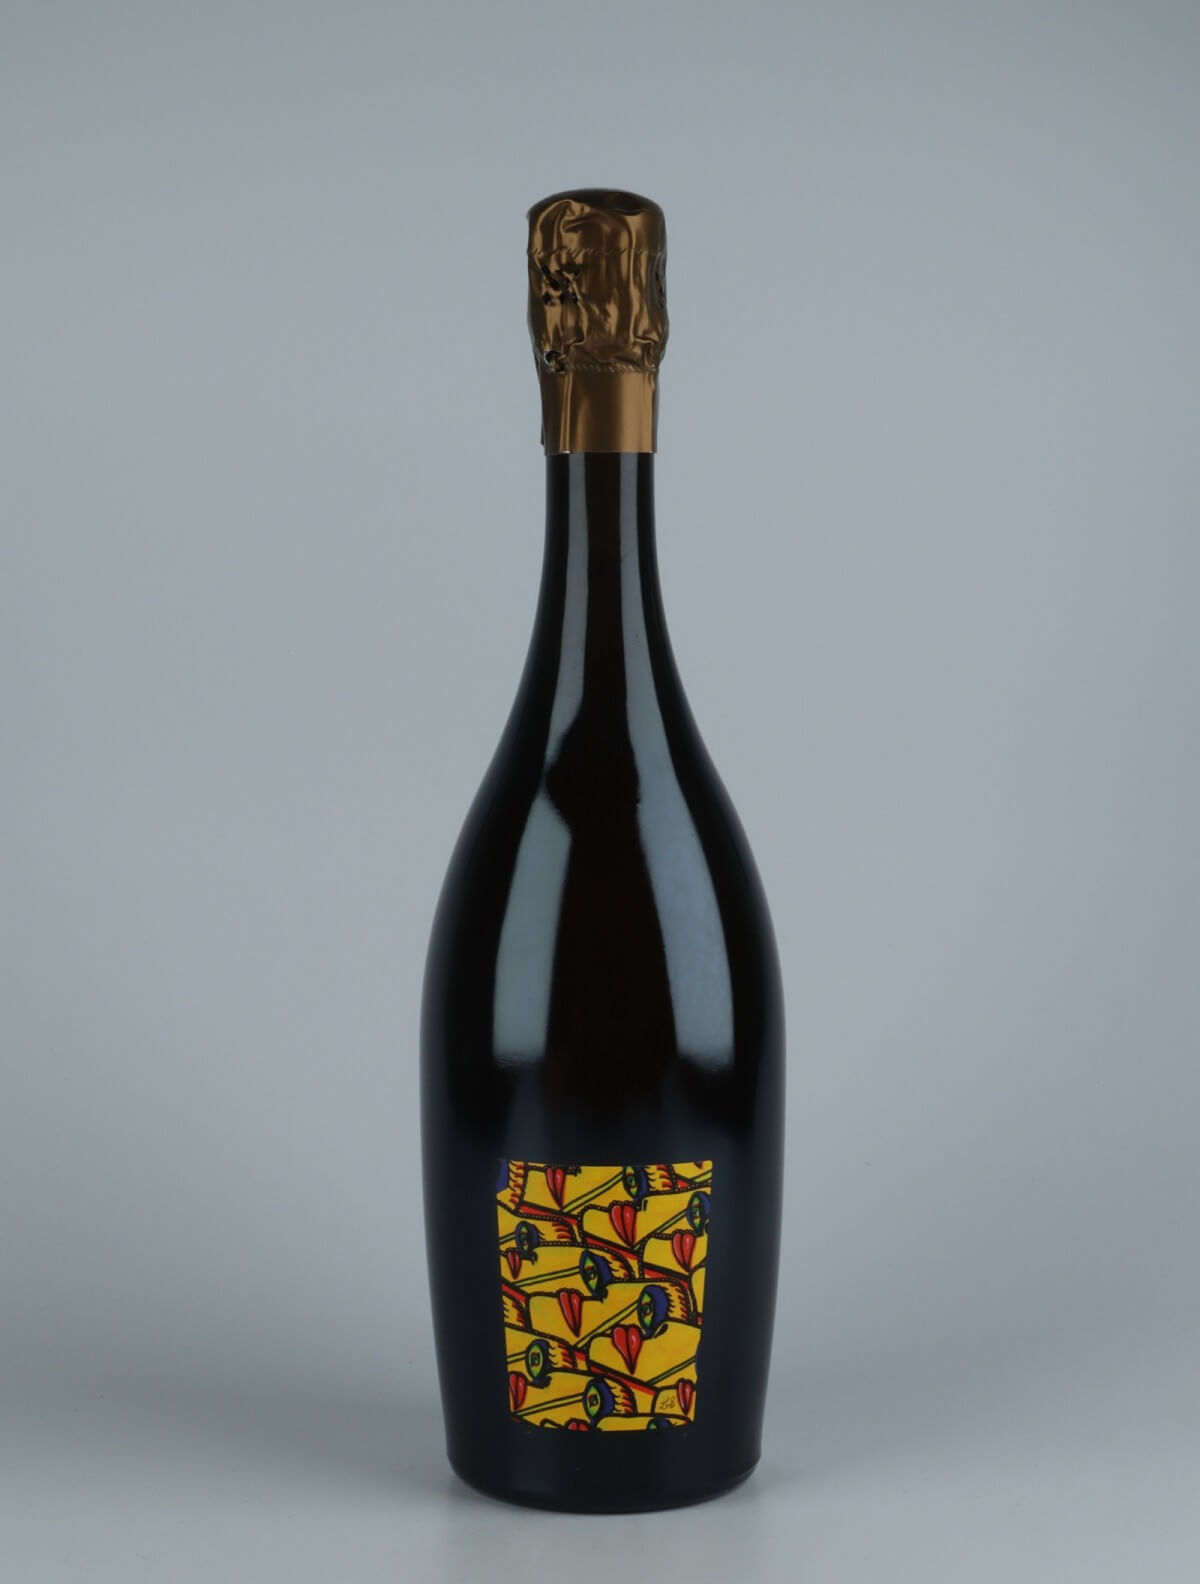 En flaske 2015 Logos Blanc - Les Hazardes - Brut Nature Mousserende fra Stroebel, Champagne i Frankrig